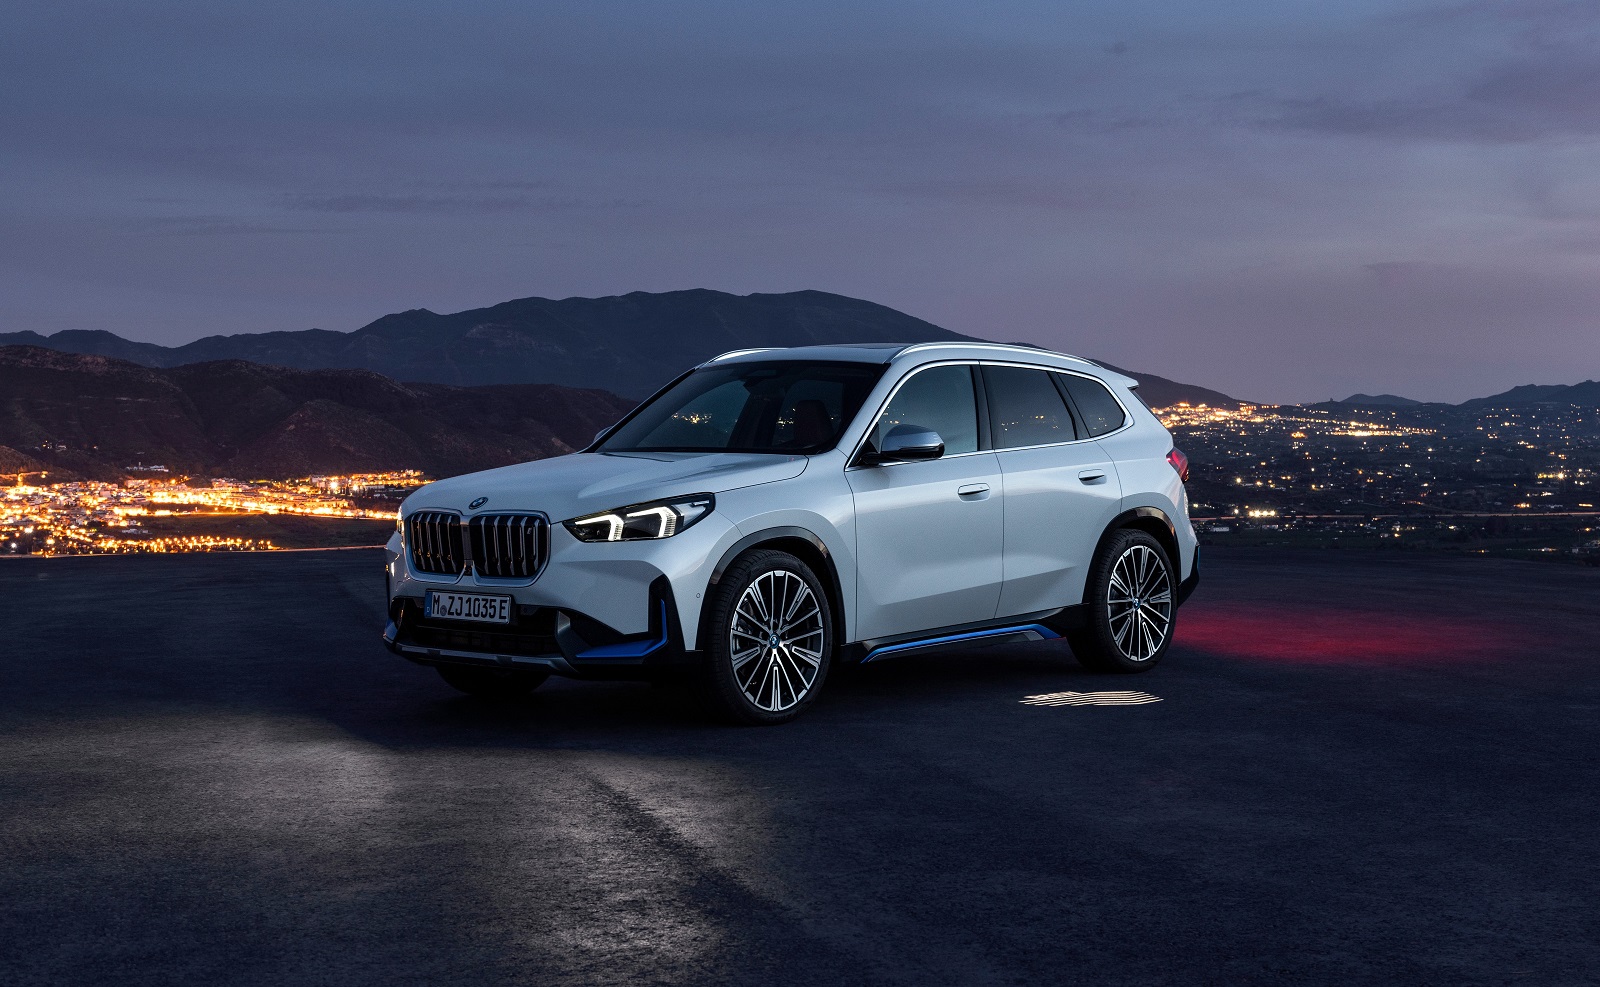 BMW X1 2015 xLINE 2019 - Ausstattung, Serienausstattung, Preise